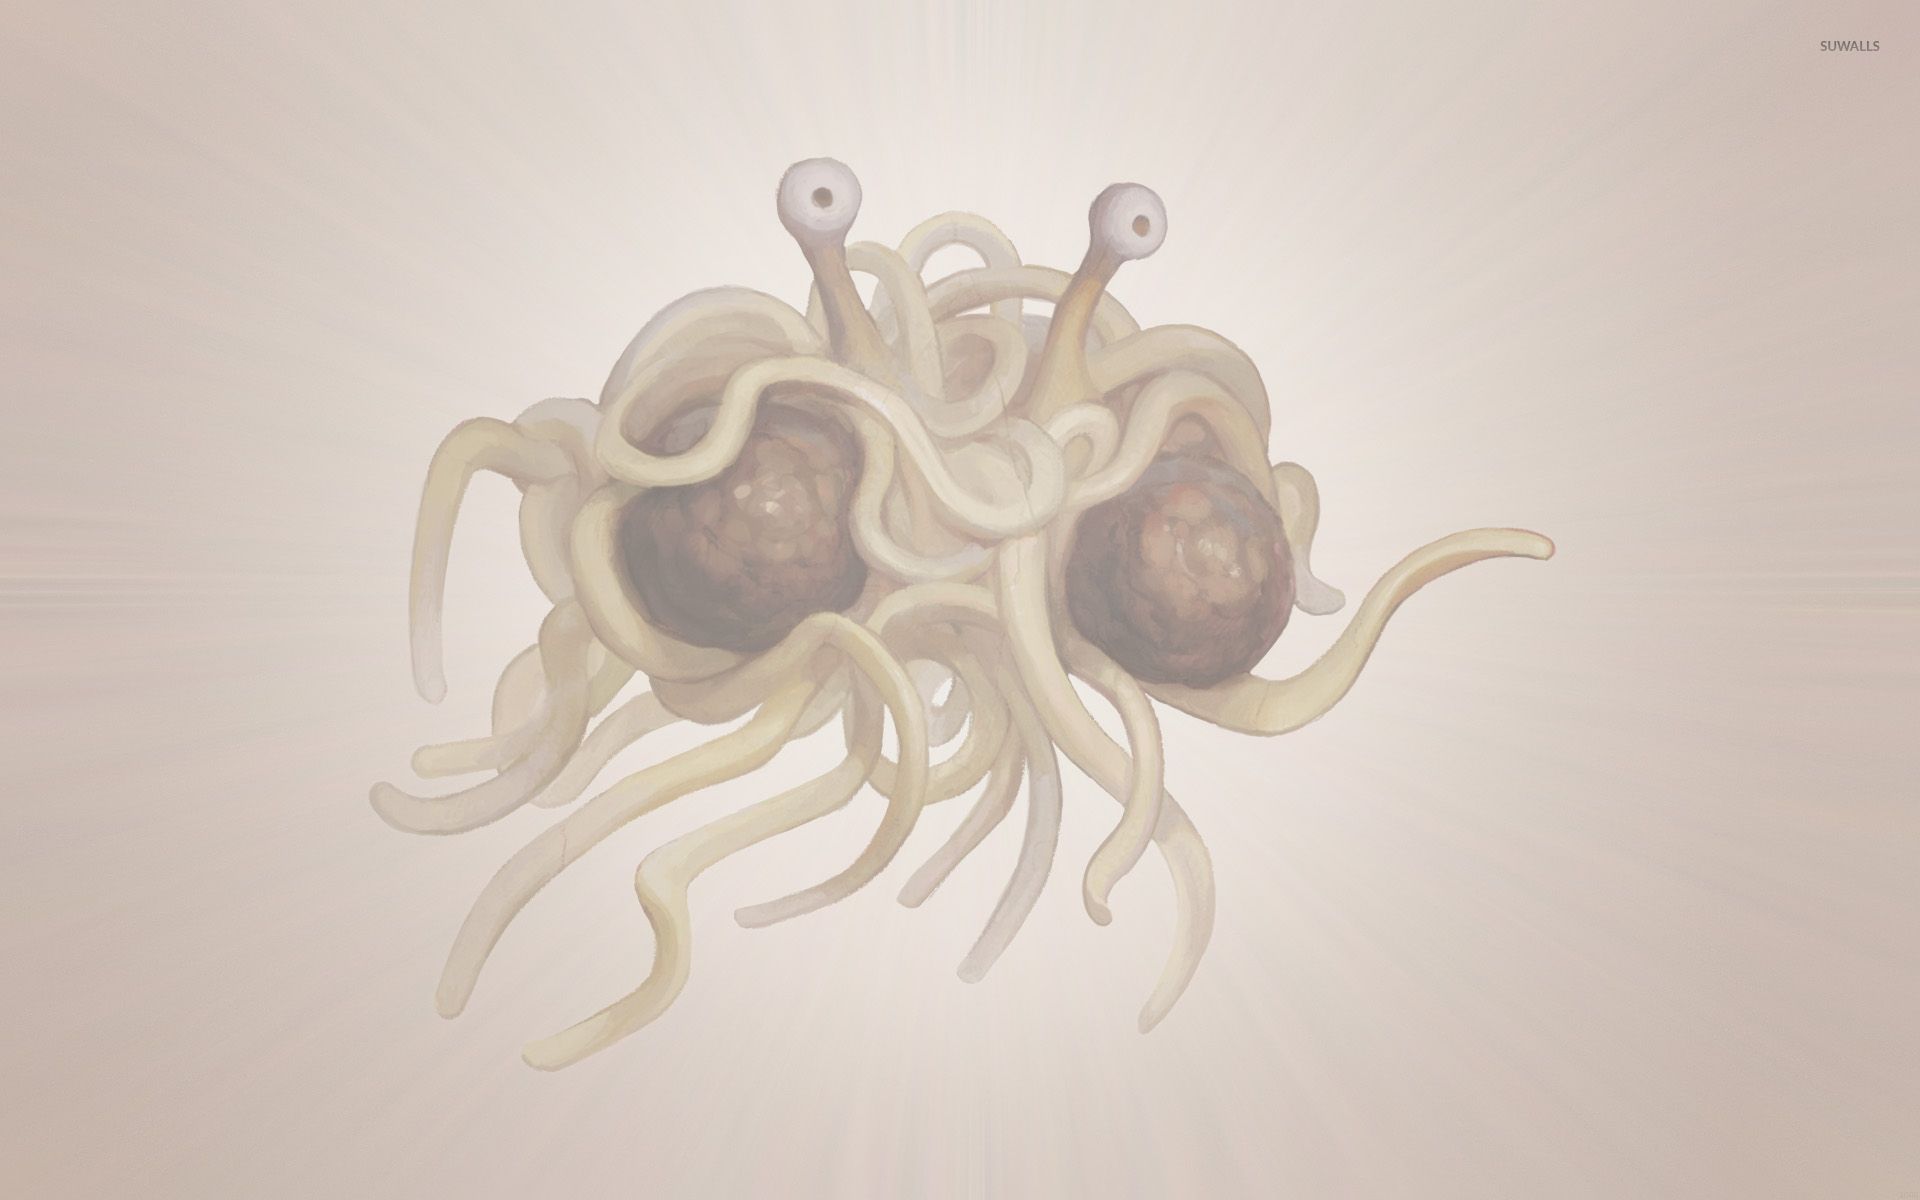 Flying Spaghetti Monster Wallpaper Funny